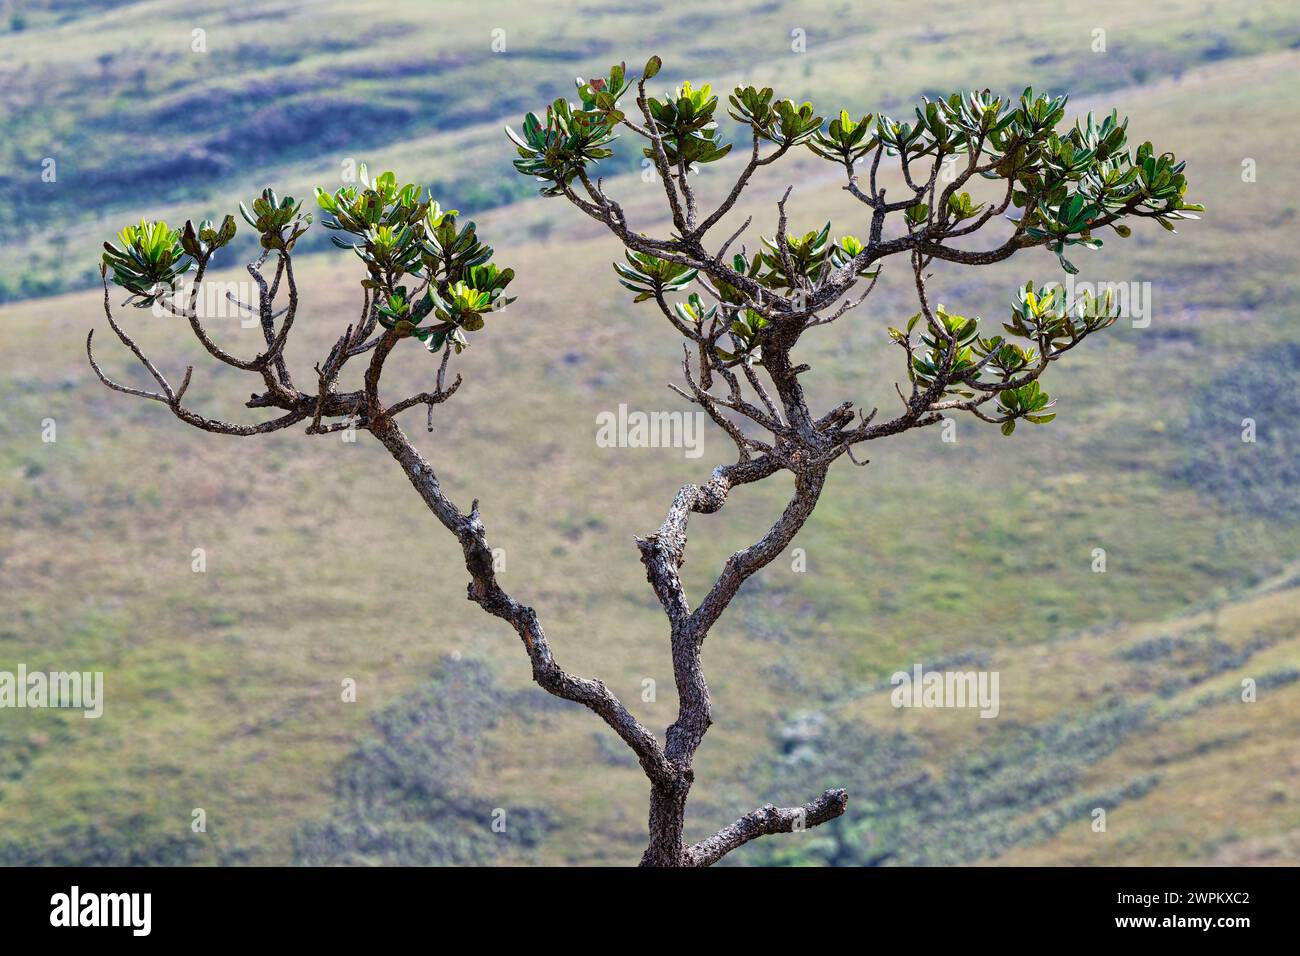 Cerrado tree, Serra da Canastra, Minas Gerais, Brazil, South America Stock Photo